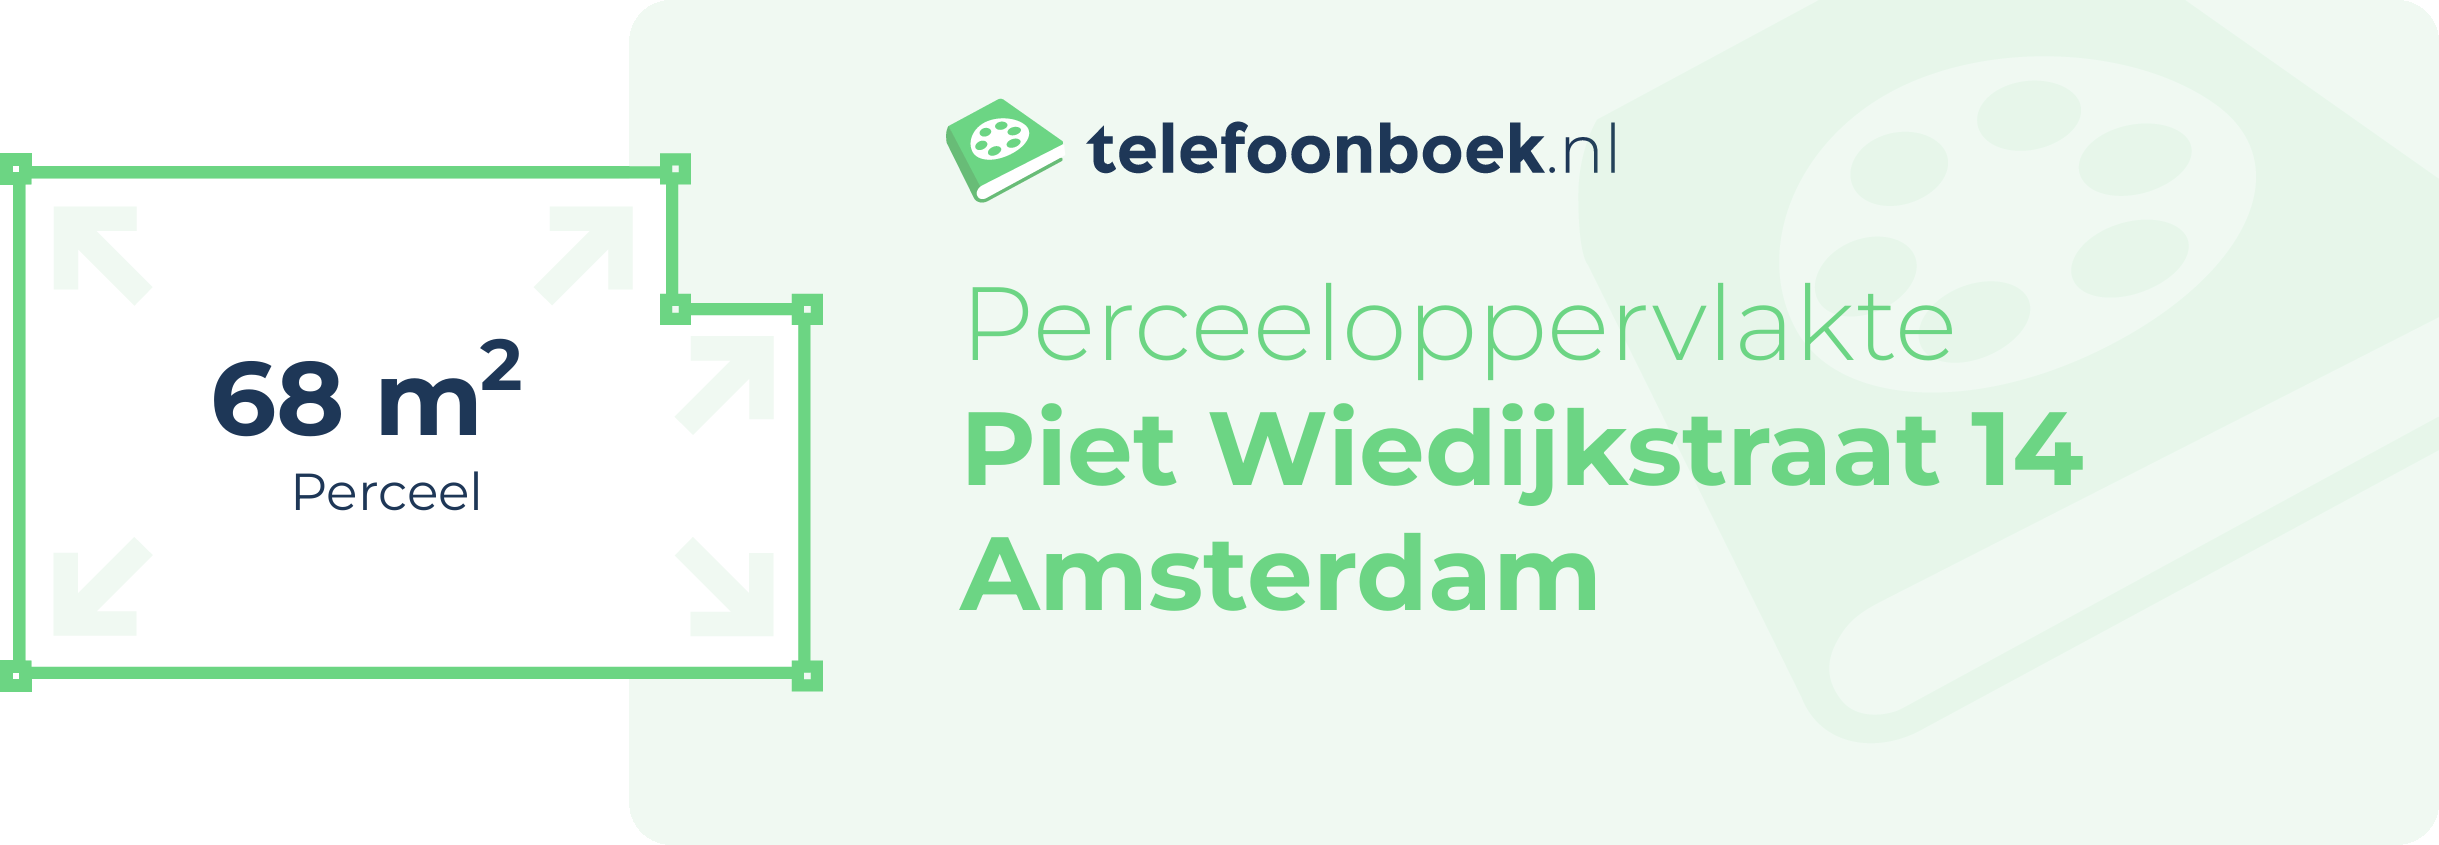 Perceeloppervlakte Piet Wiedijkstraat 14 Amsterdam